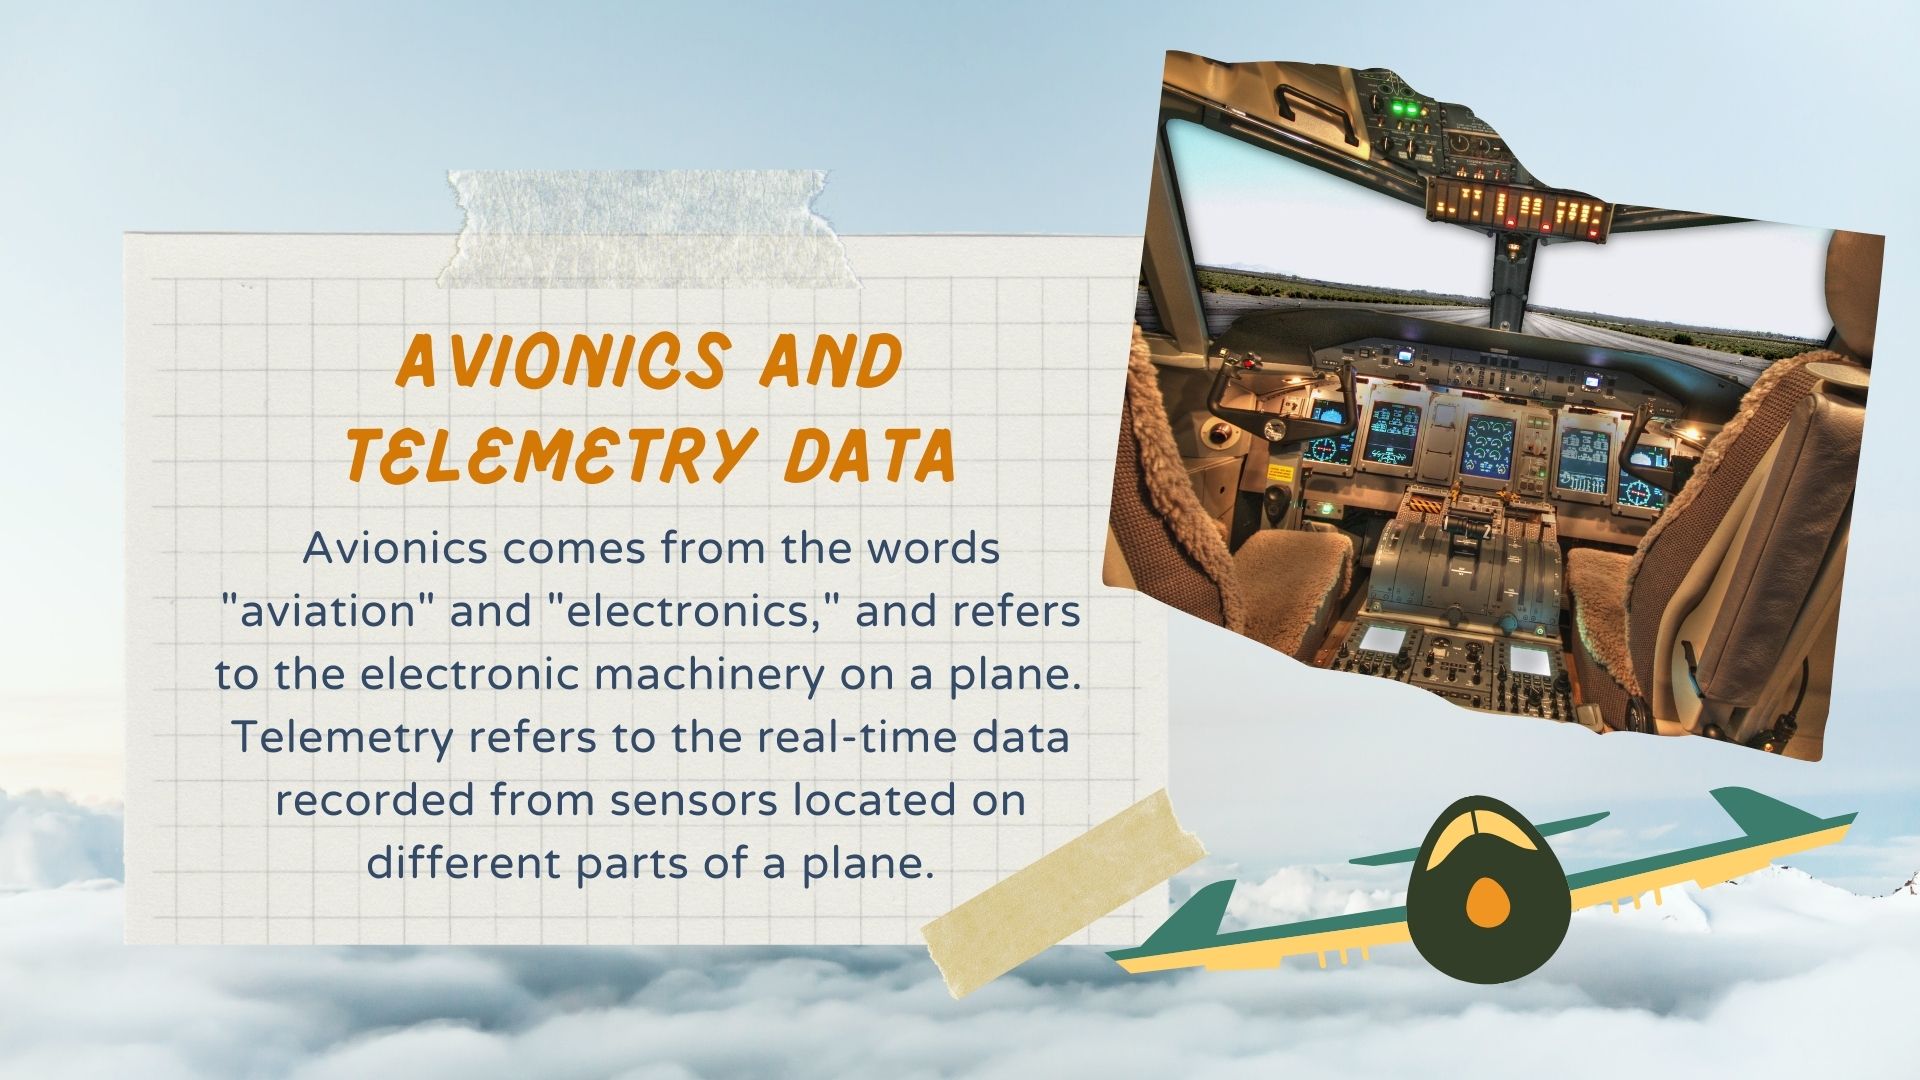 Avionics and telemetry data